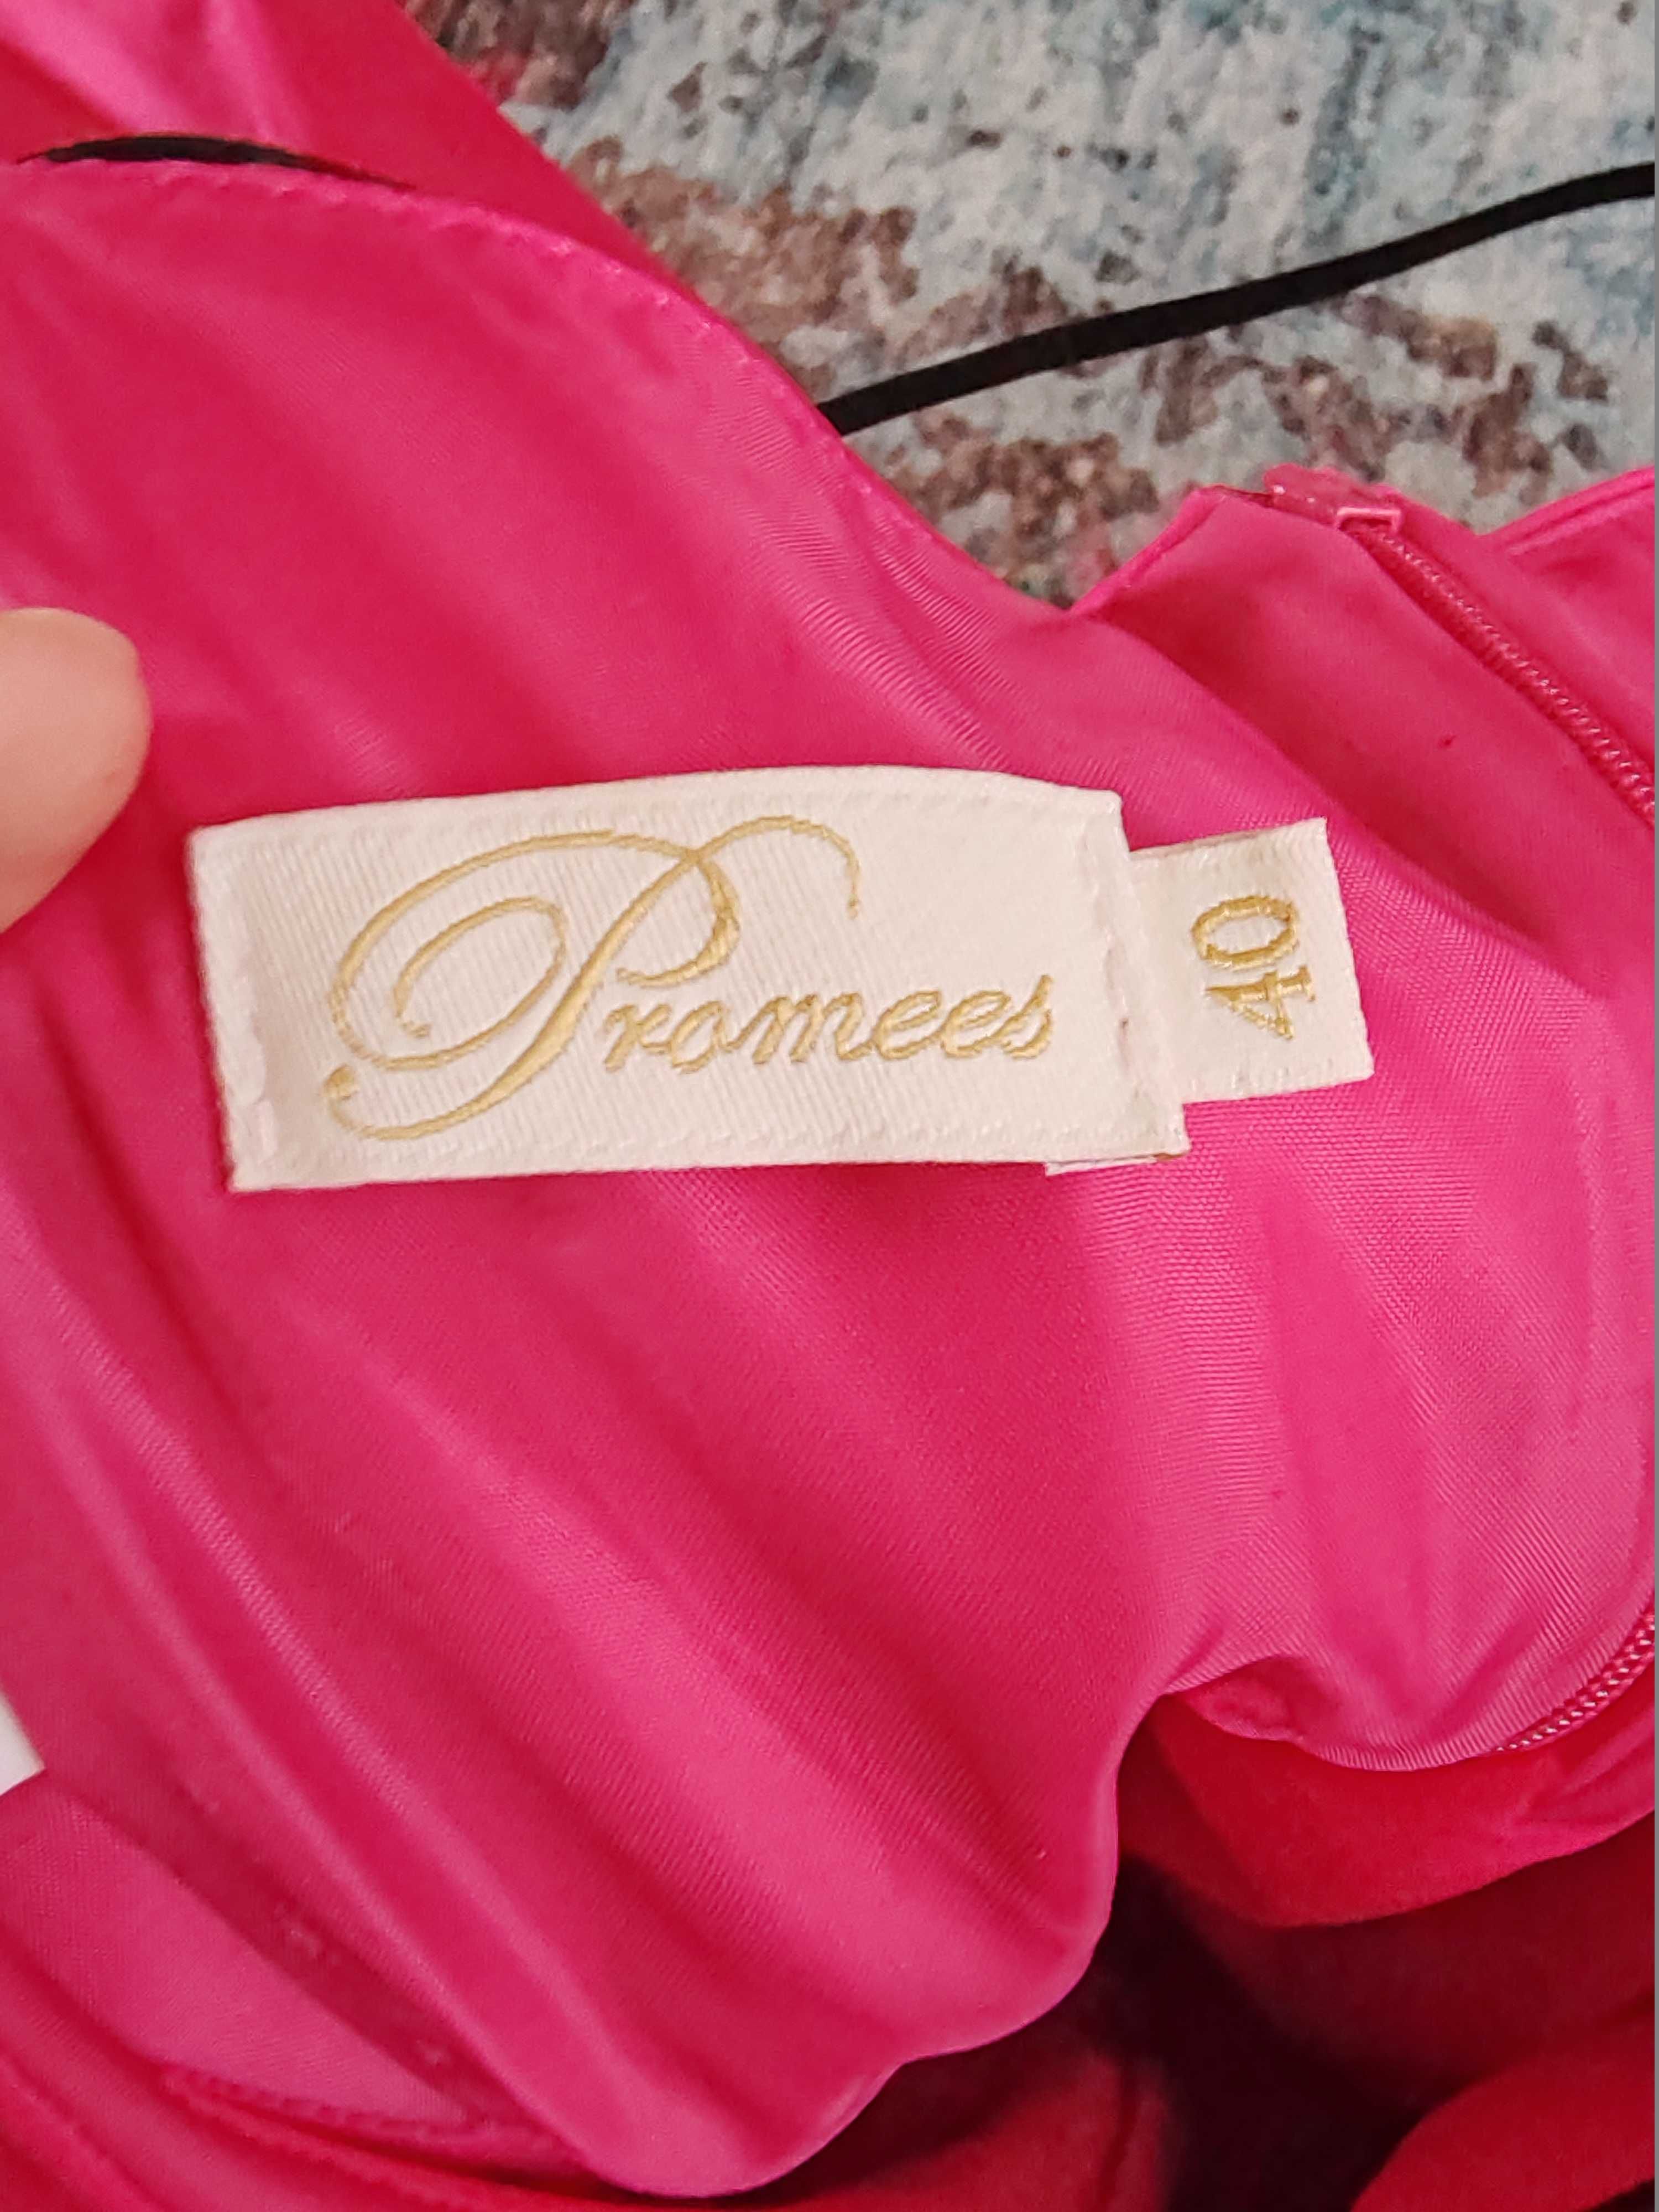 Sukienka różowa na ramiączkach rozm. 40 Promees + bolerko